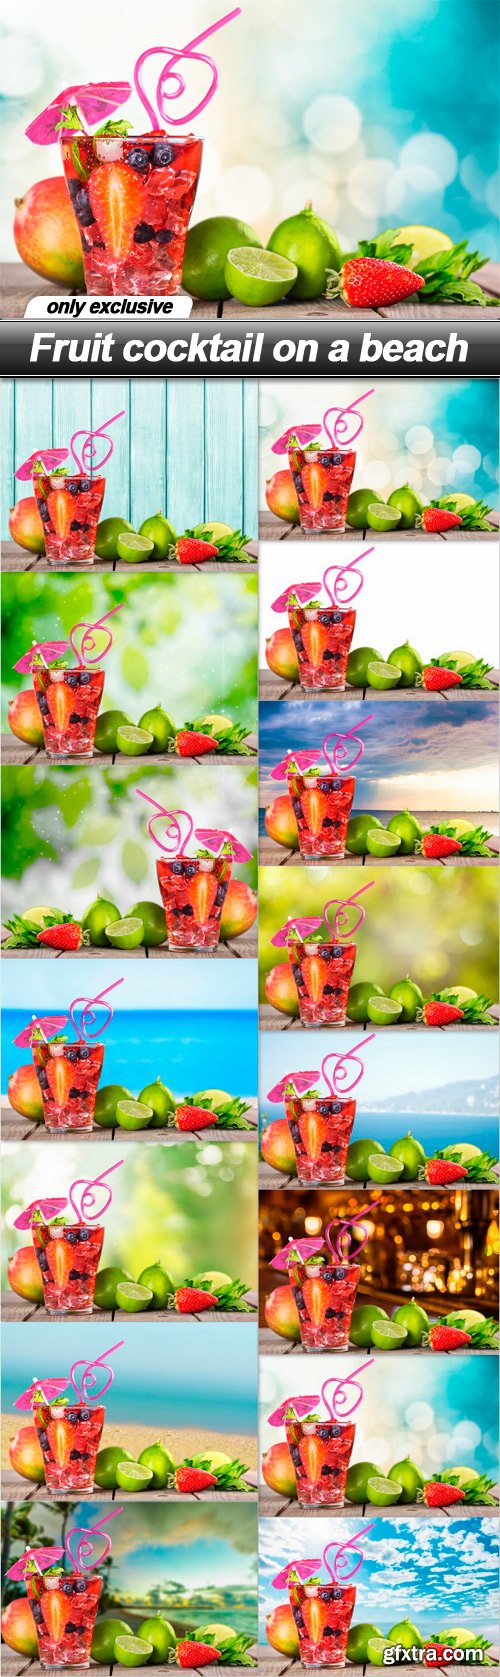 Fruit cocktail on a beach - 15 UHQ JPEG